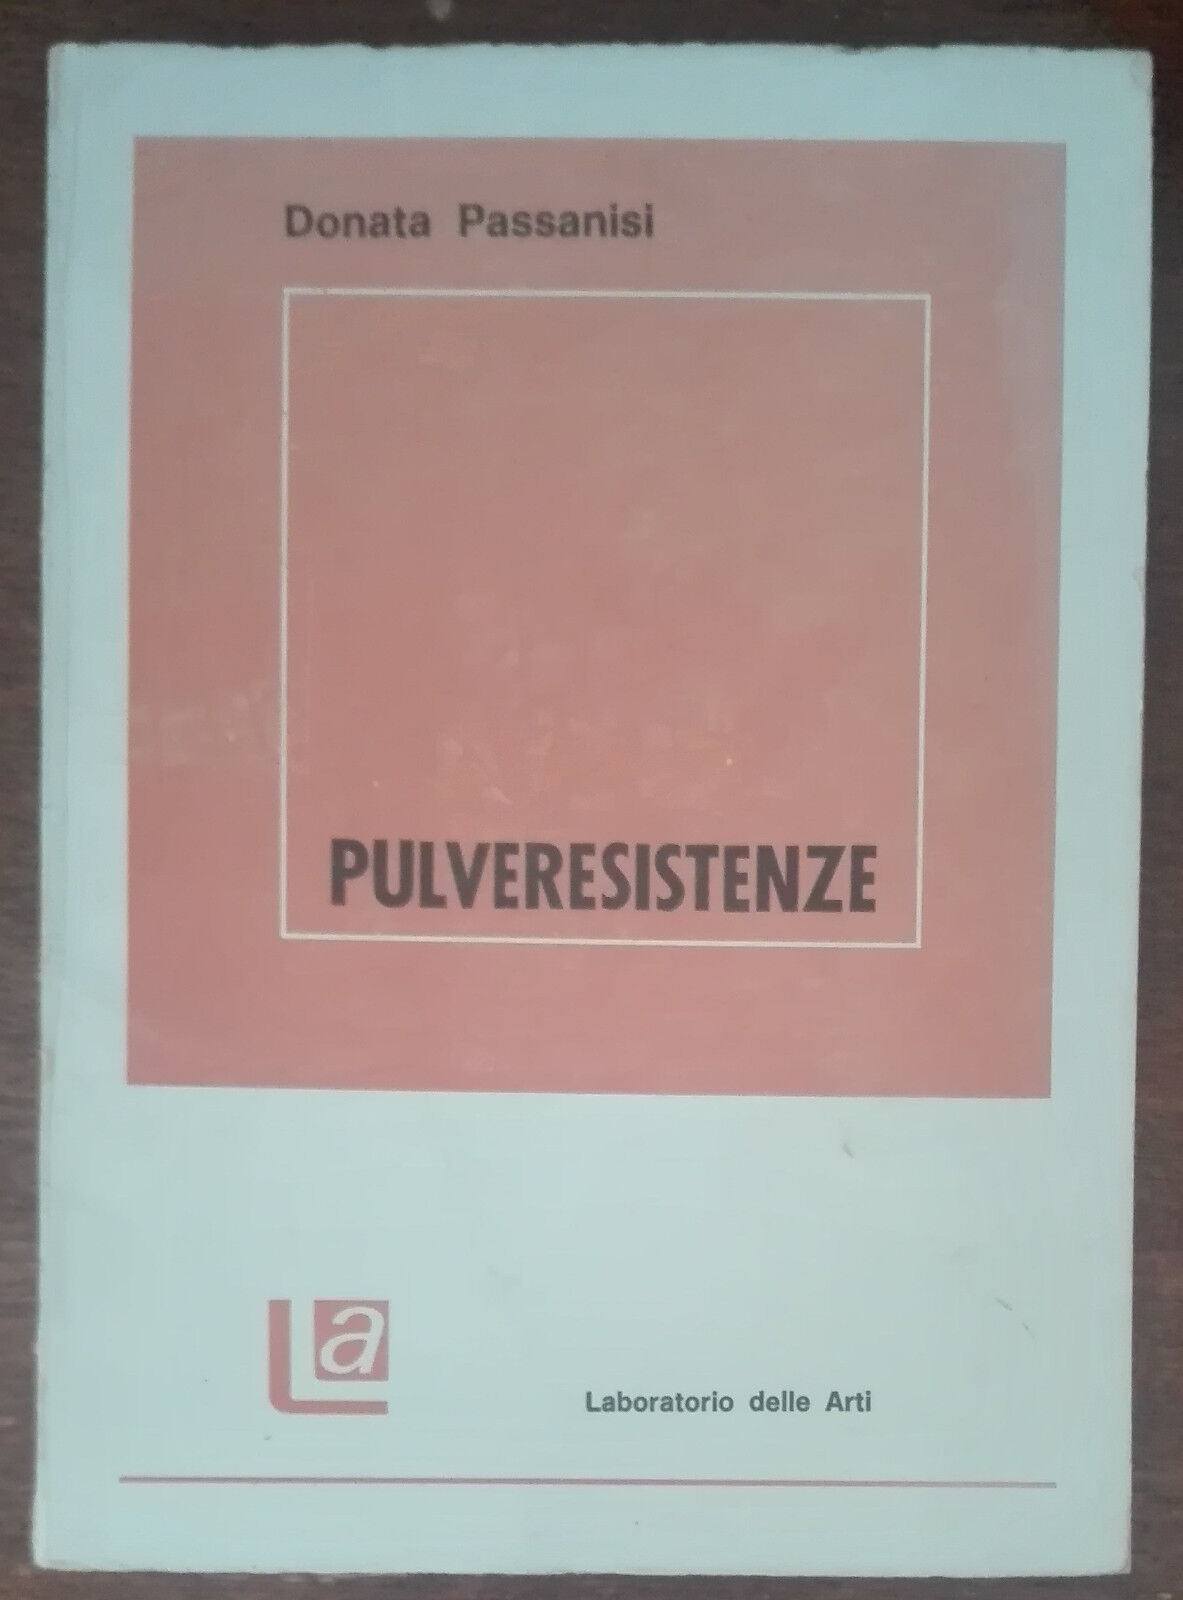 Pulveresistenze (AUTOGRAFATO DALL'AUTORE) - Donata Passanisi - 1984 - A